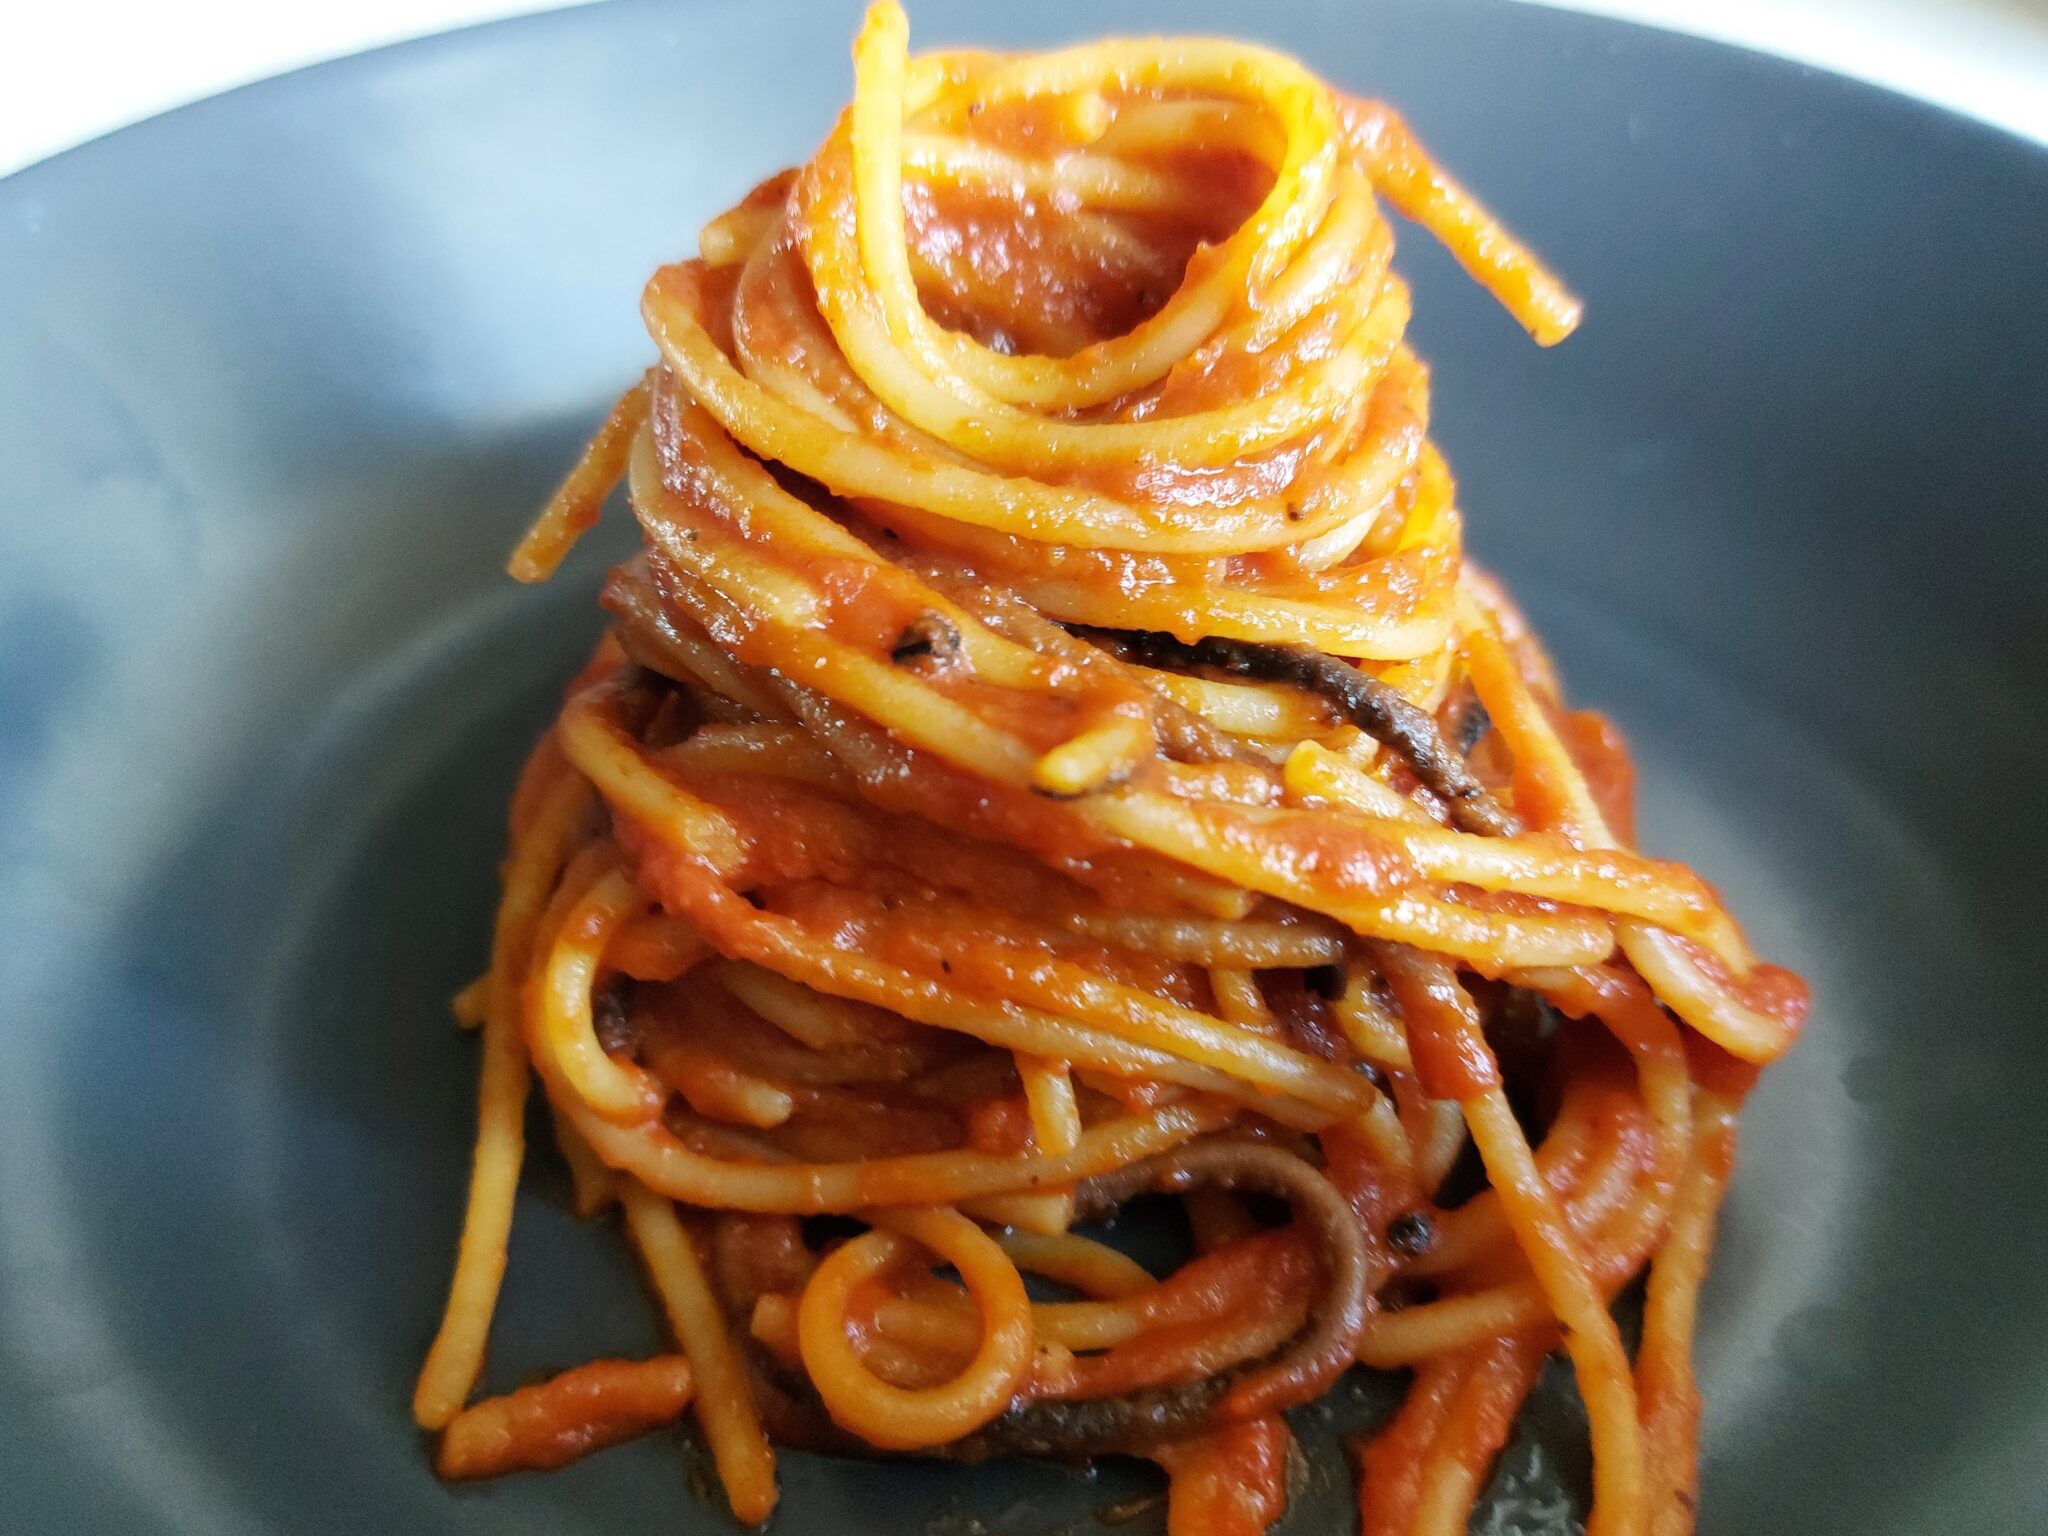 Killer spaghetti (spaghetti all'assassina) - original pasta recipe from ...